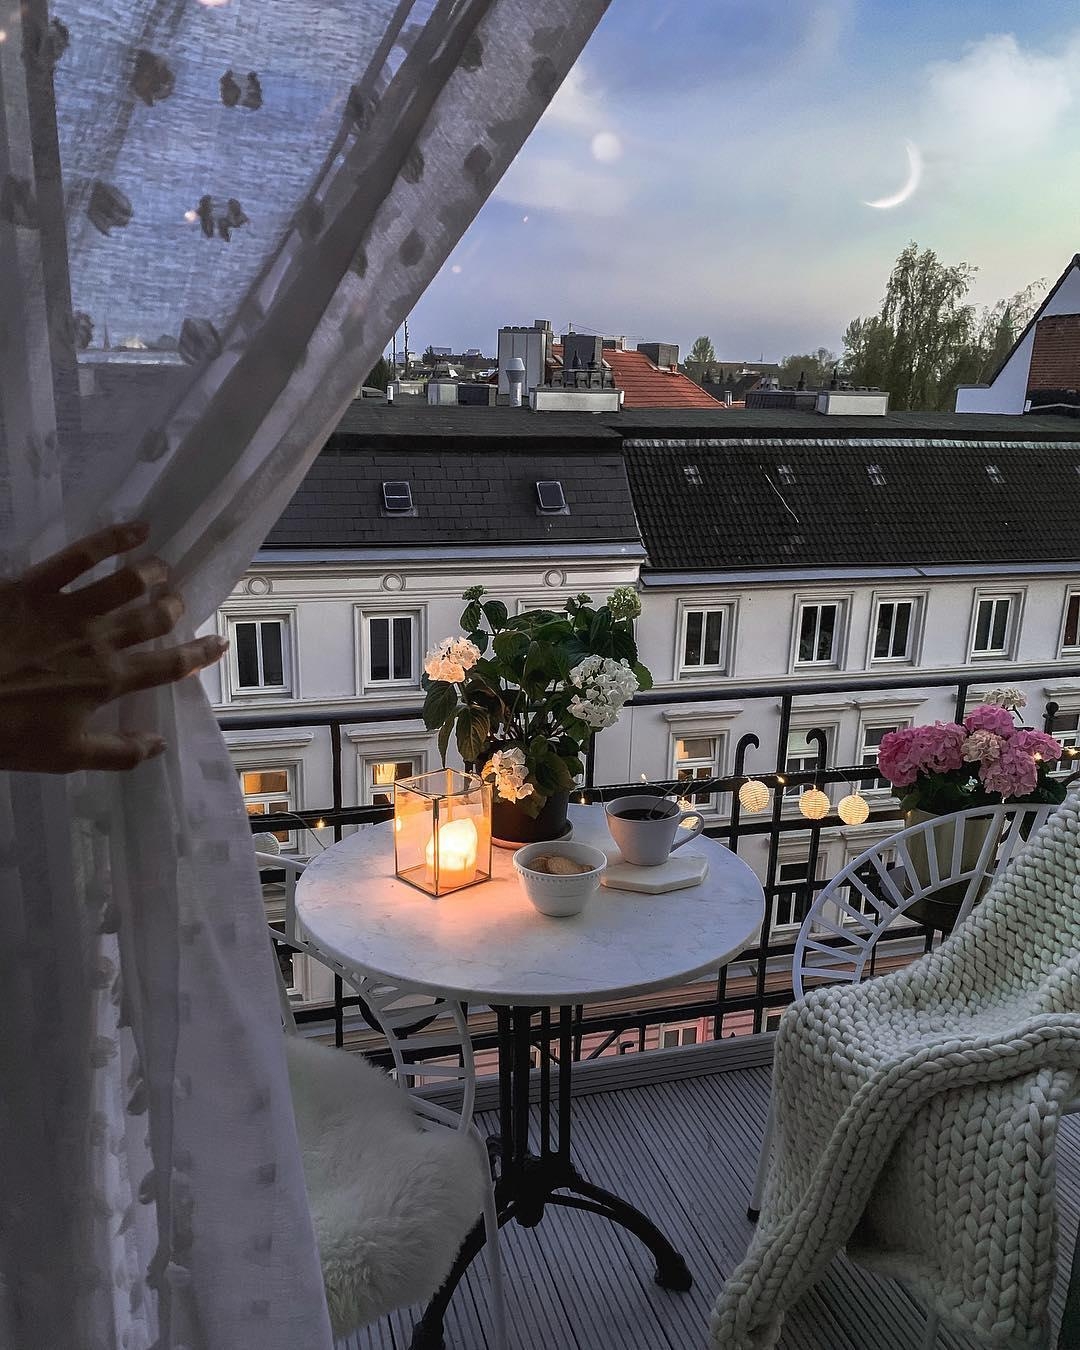 Ein wundervoller #Abend.

#altbau #altbauliebe #altbauwohnung #balkon #kerzen #outdoor #frühling #deko #inspiration